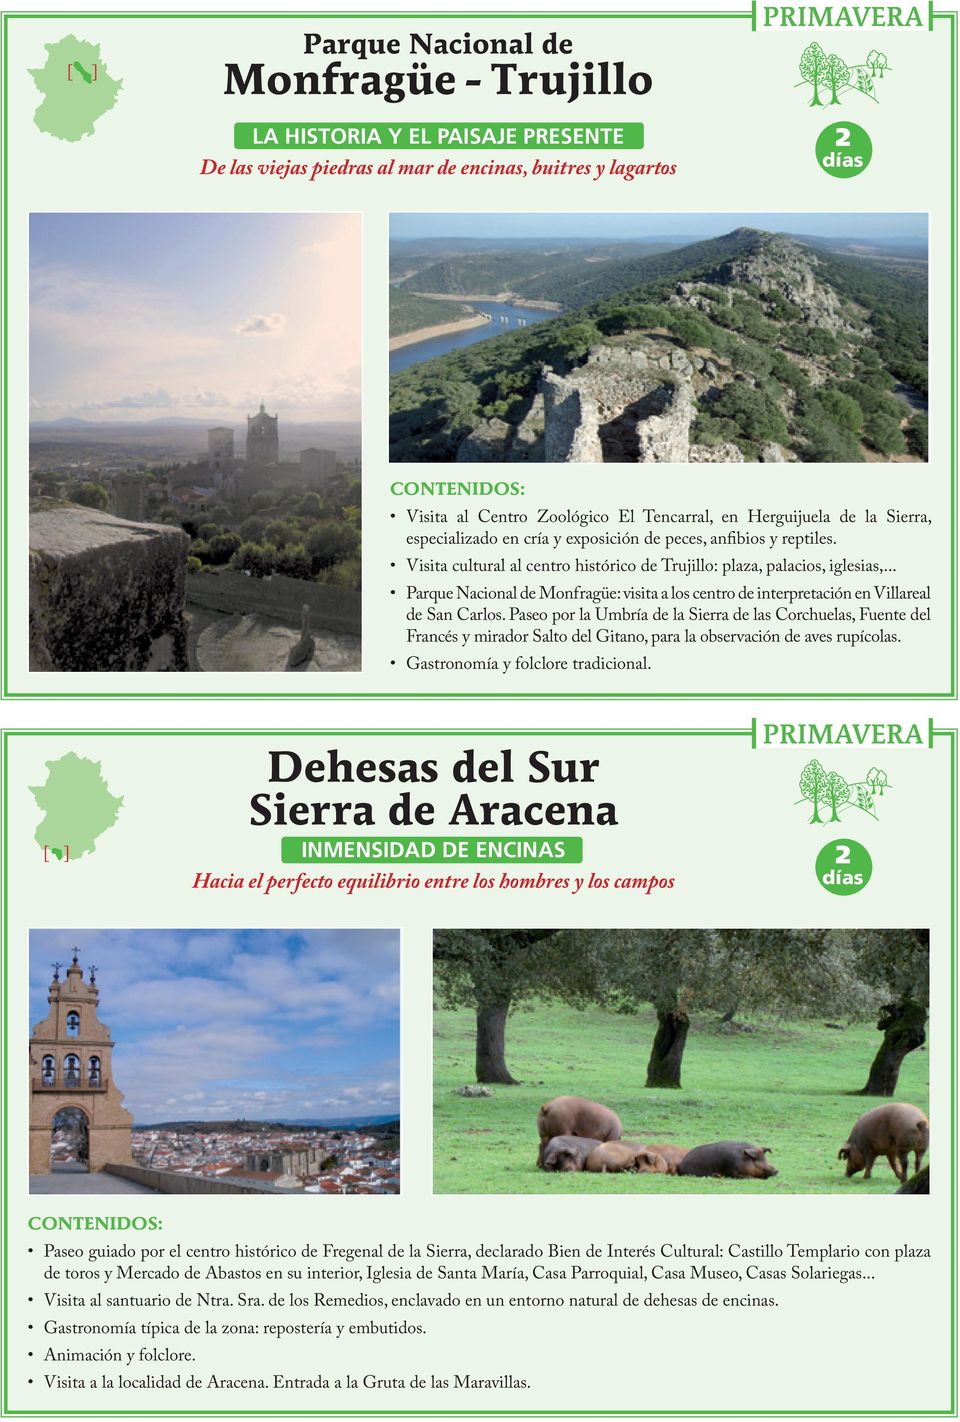 .. Parque Nacional de Monfragüe: visita a los centro de interpretación en Villareal de San Carlos.